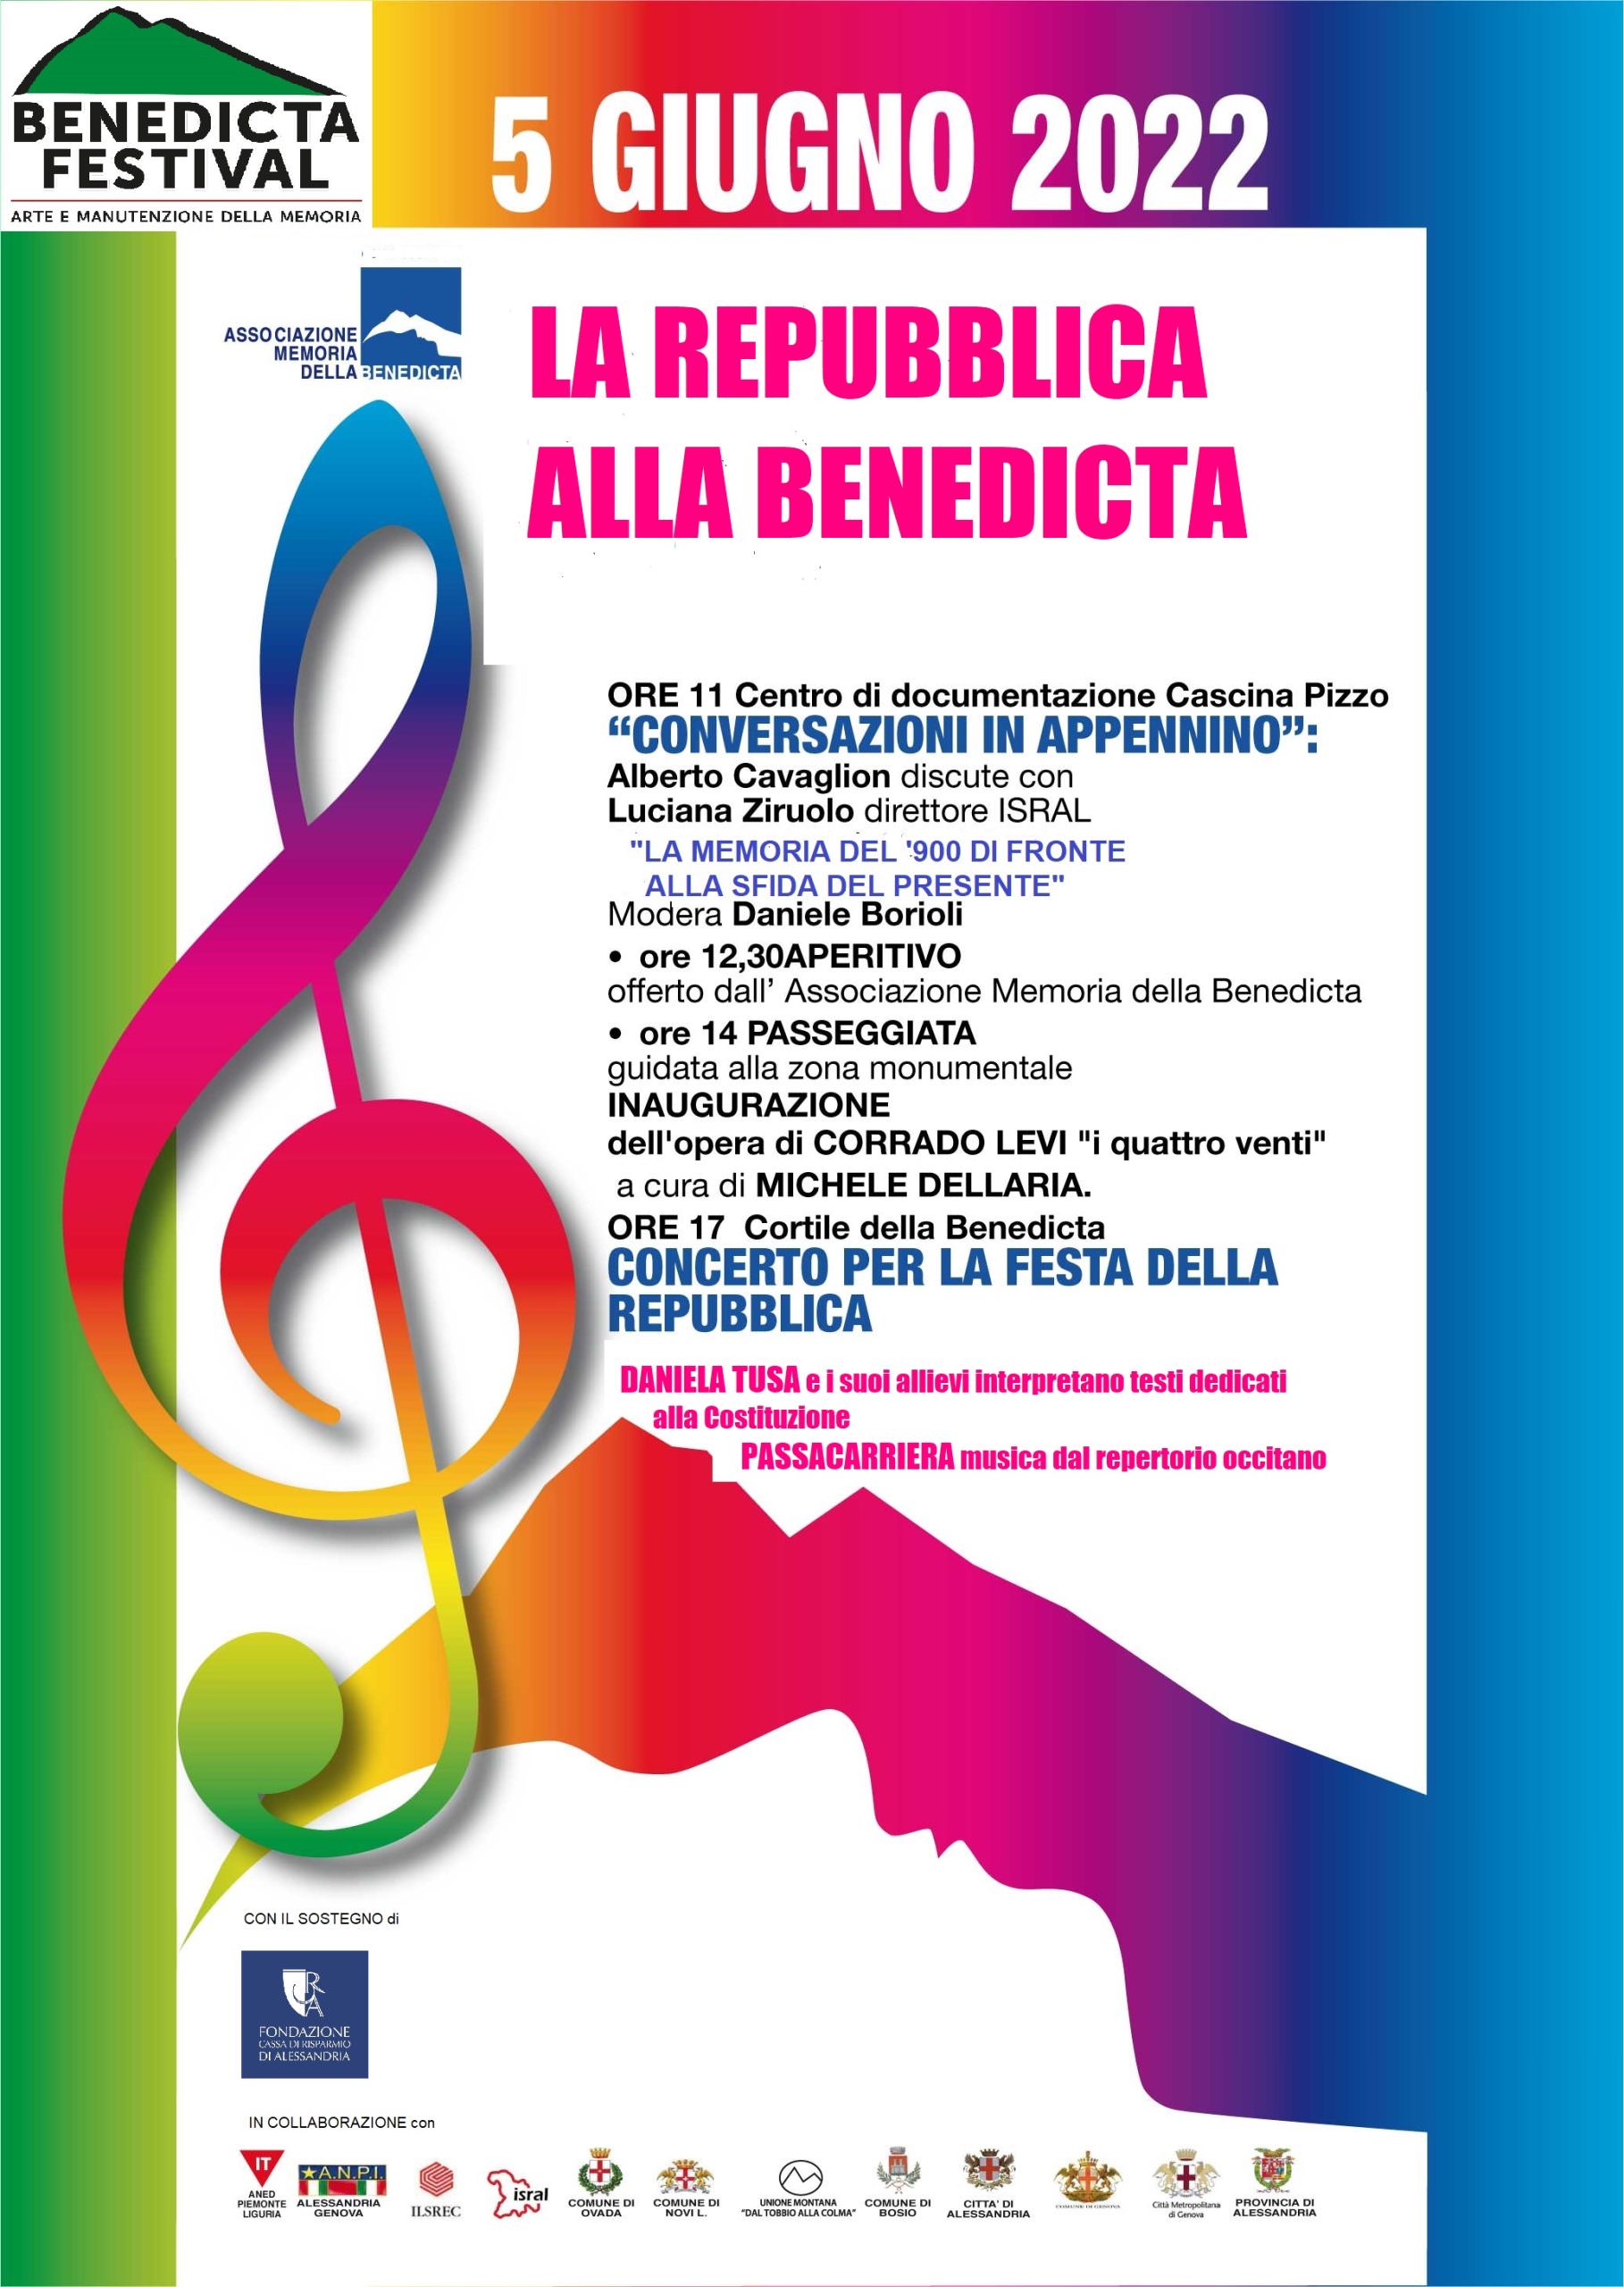 Foto 1 - Domenica 5 giugno “Concerto della Repubblica” alla Benedicta